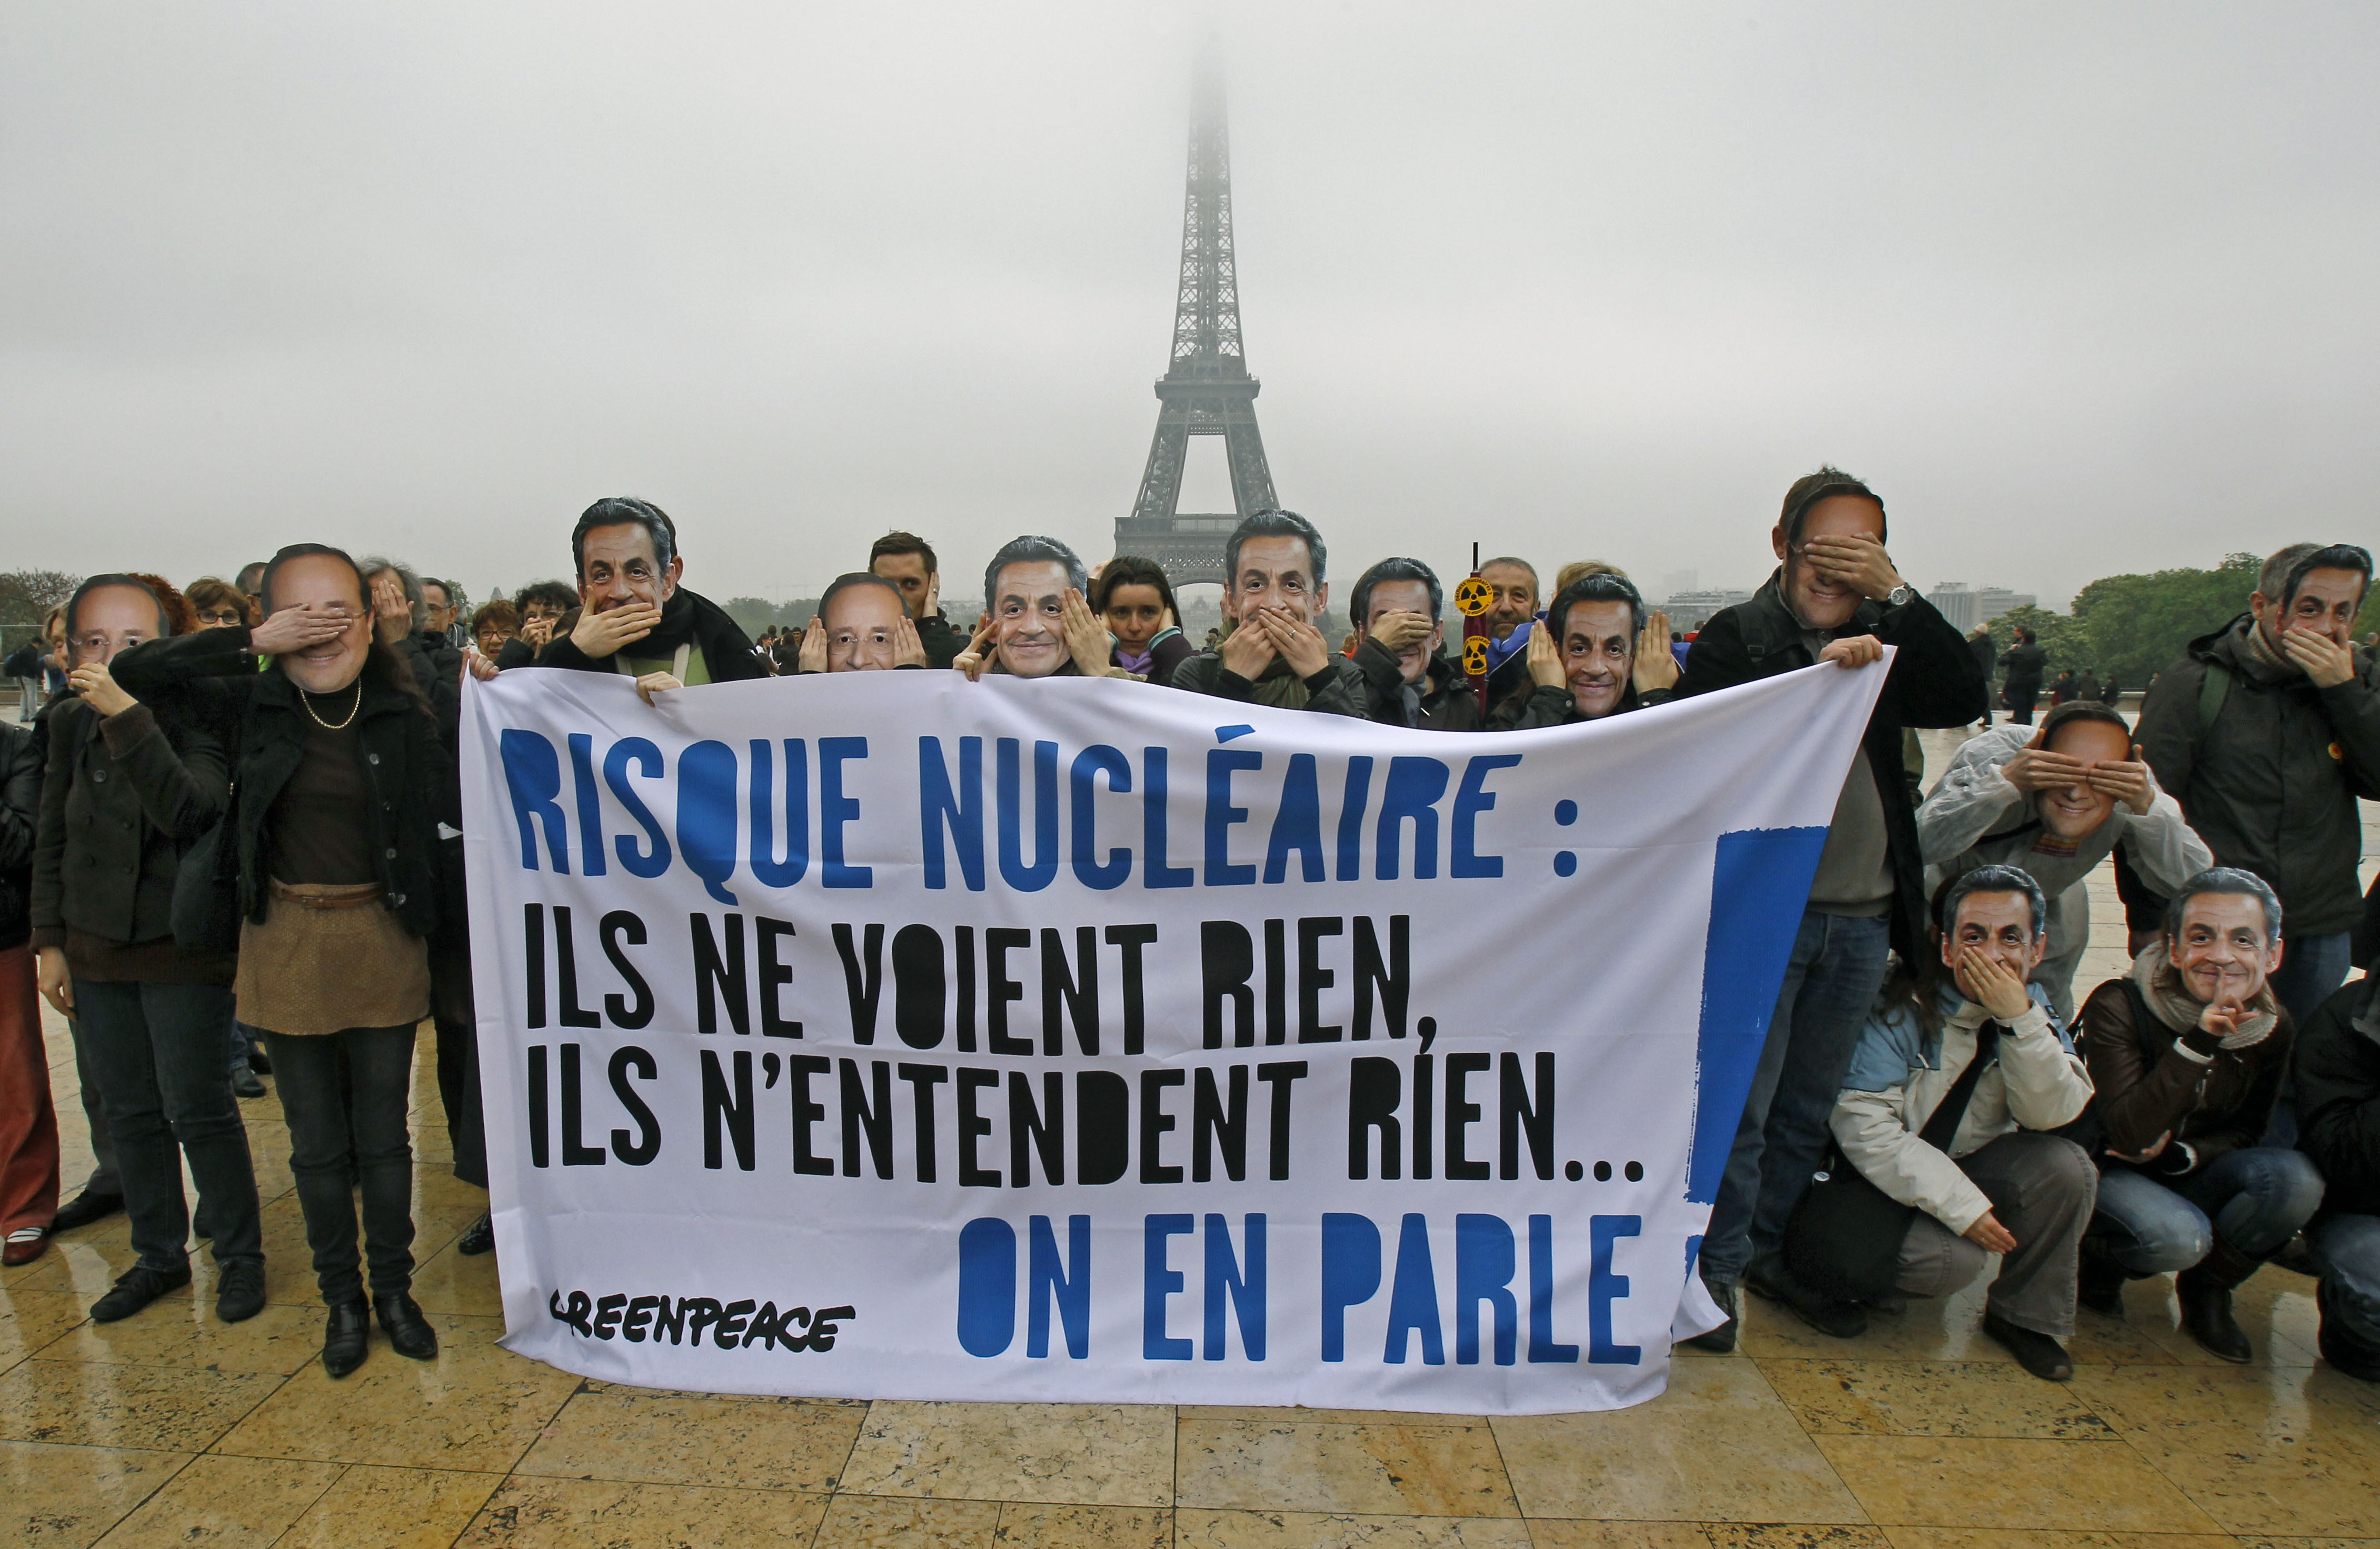 Μήνυμα για την πυρηνική ενέργεια σε Σαρκοζί-Ολάντ από ακτιβιστή